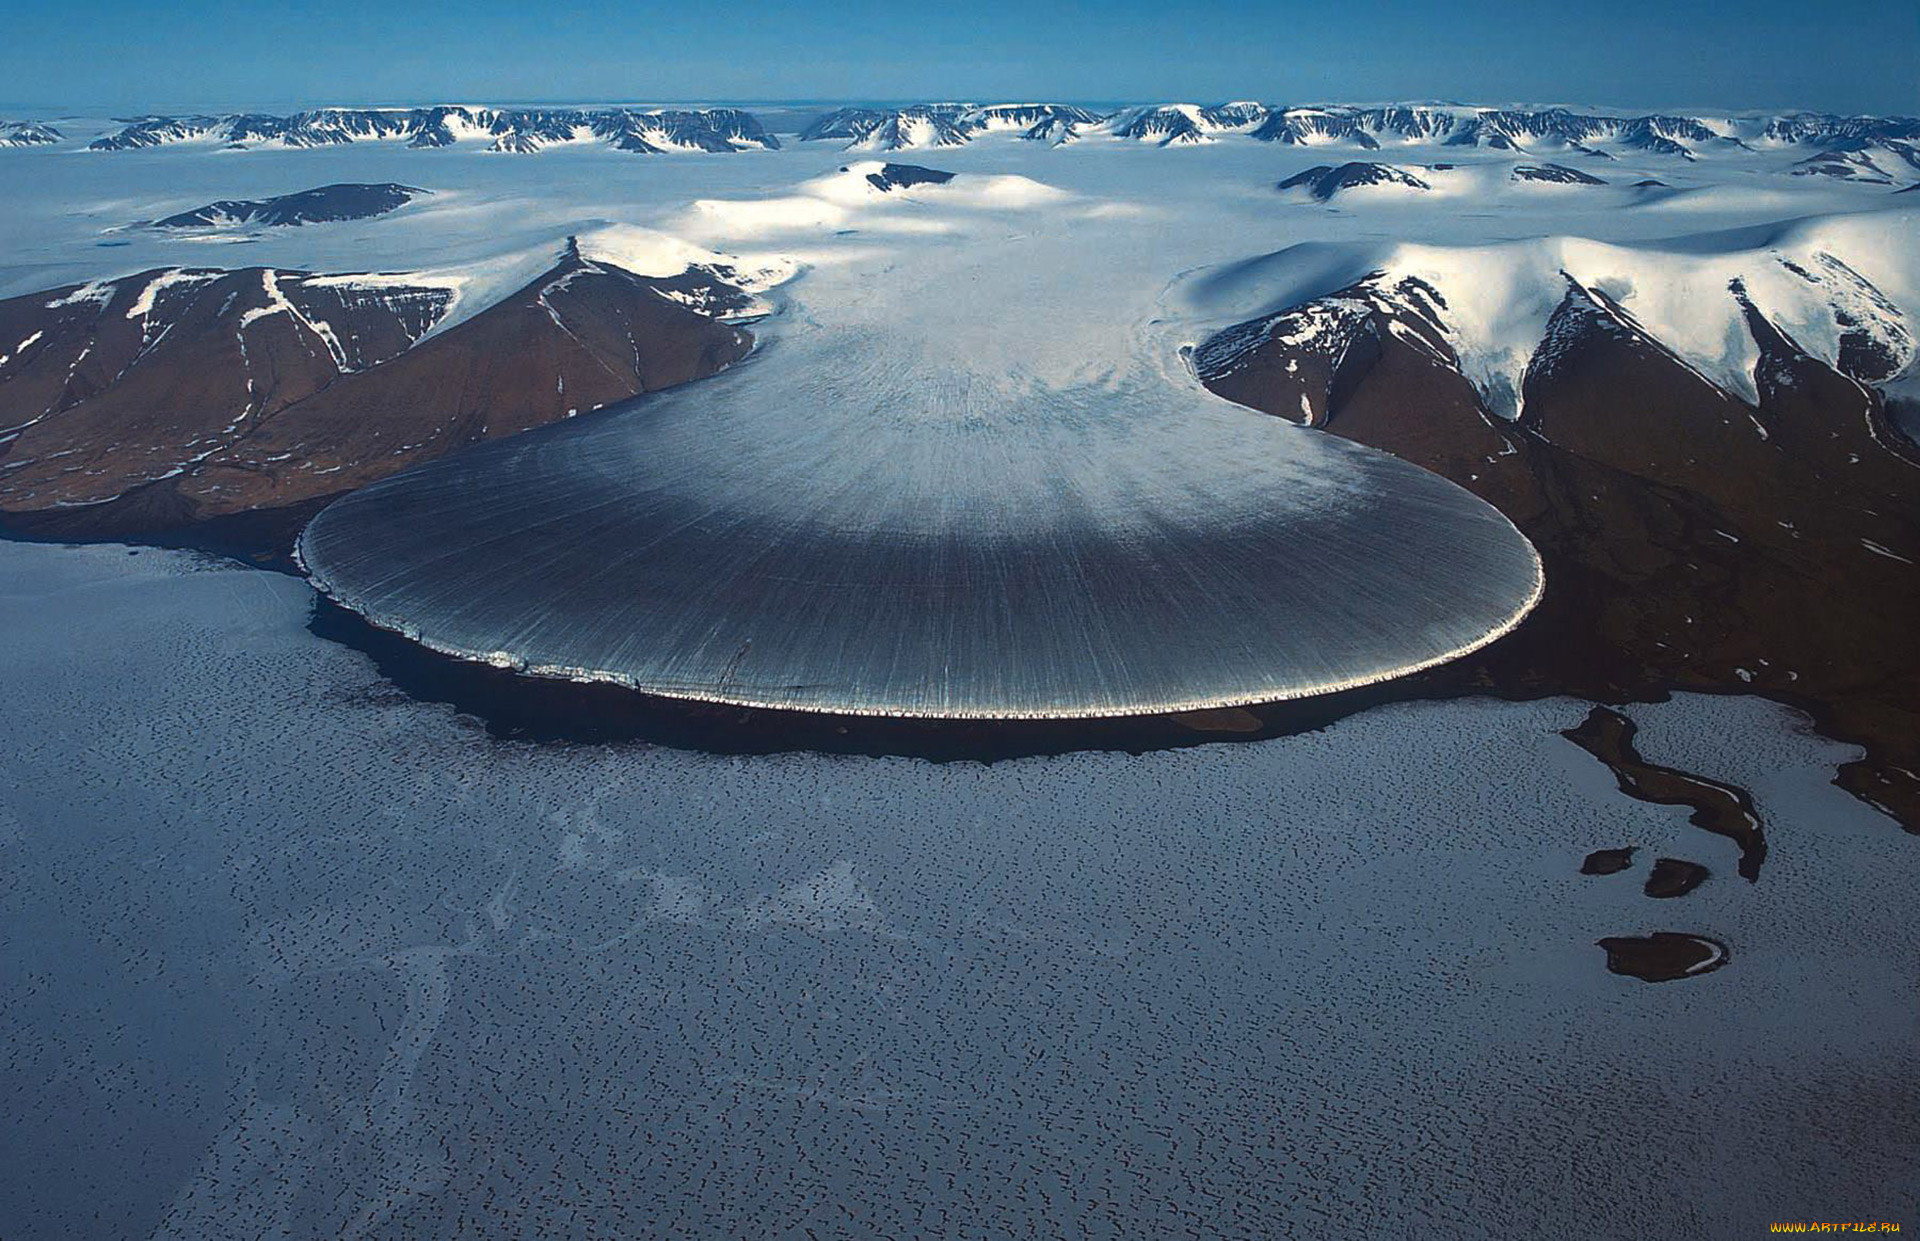 Самый большой географический объект в мире. Ледник Слоновья нога Гренландия. Долина Мак Мердо в Антарктиде. Оазис Ширмахера в Антарктиде. Гренландия ледник Ледниковый щит.